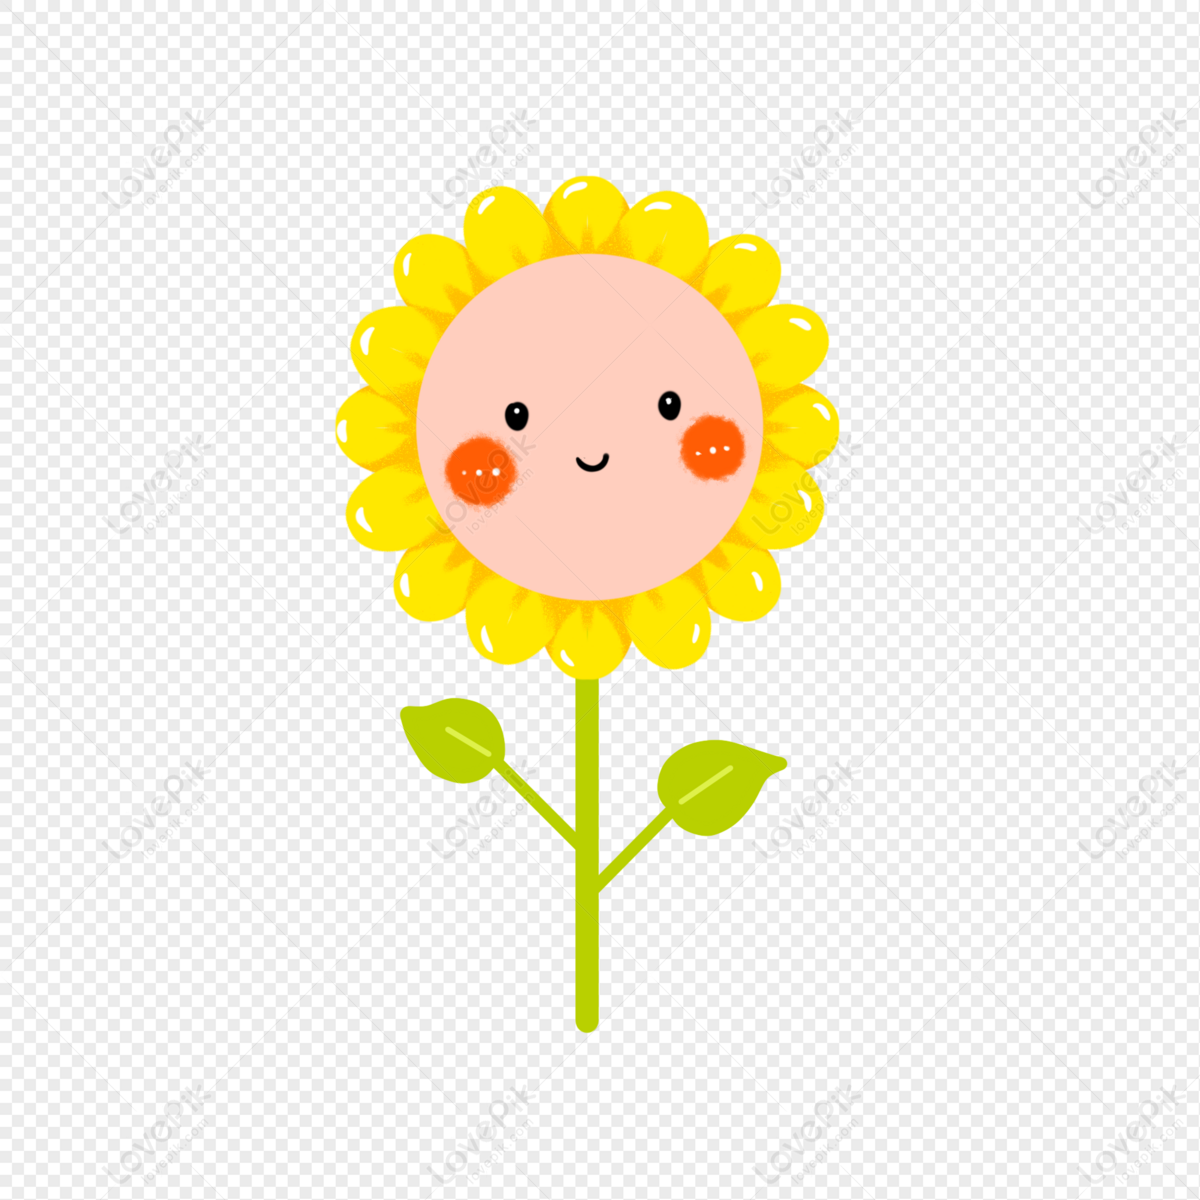 Bức ảnh chụp hoa hướng dương dễ thương mỉm cười sẽ khiến bạn liên tưởng đến những ngày hạ đang tới gần. Làm gì khi muốn giữ lại những khoảnh khắc tươi vui này? Hãy cùng nhìn thêm vào bức ảnh để cảm nhận được những nụ cười và sự tươi tắn của hoa hướng dương.